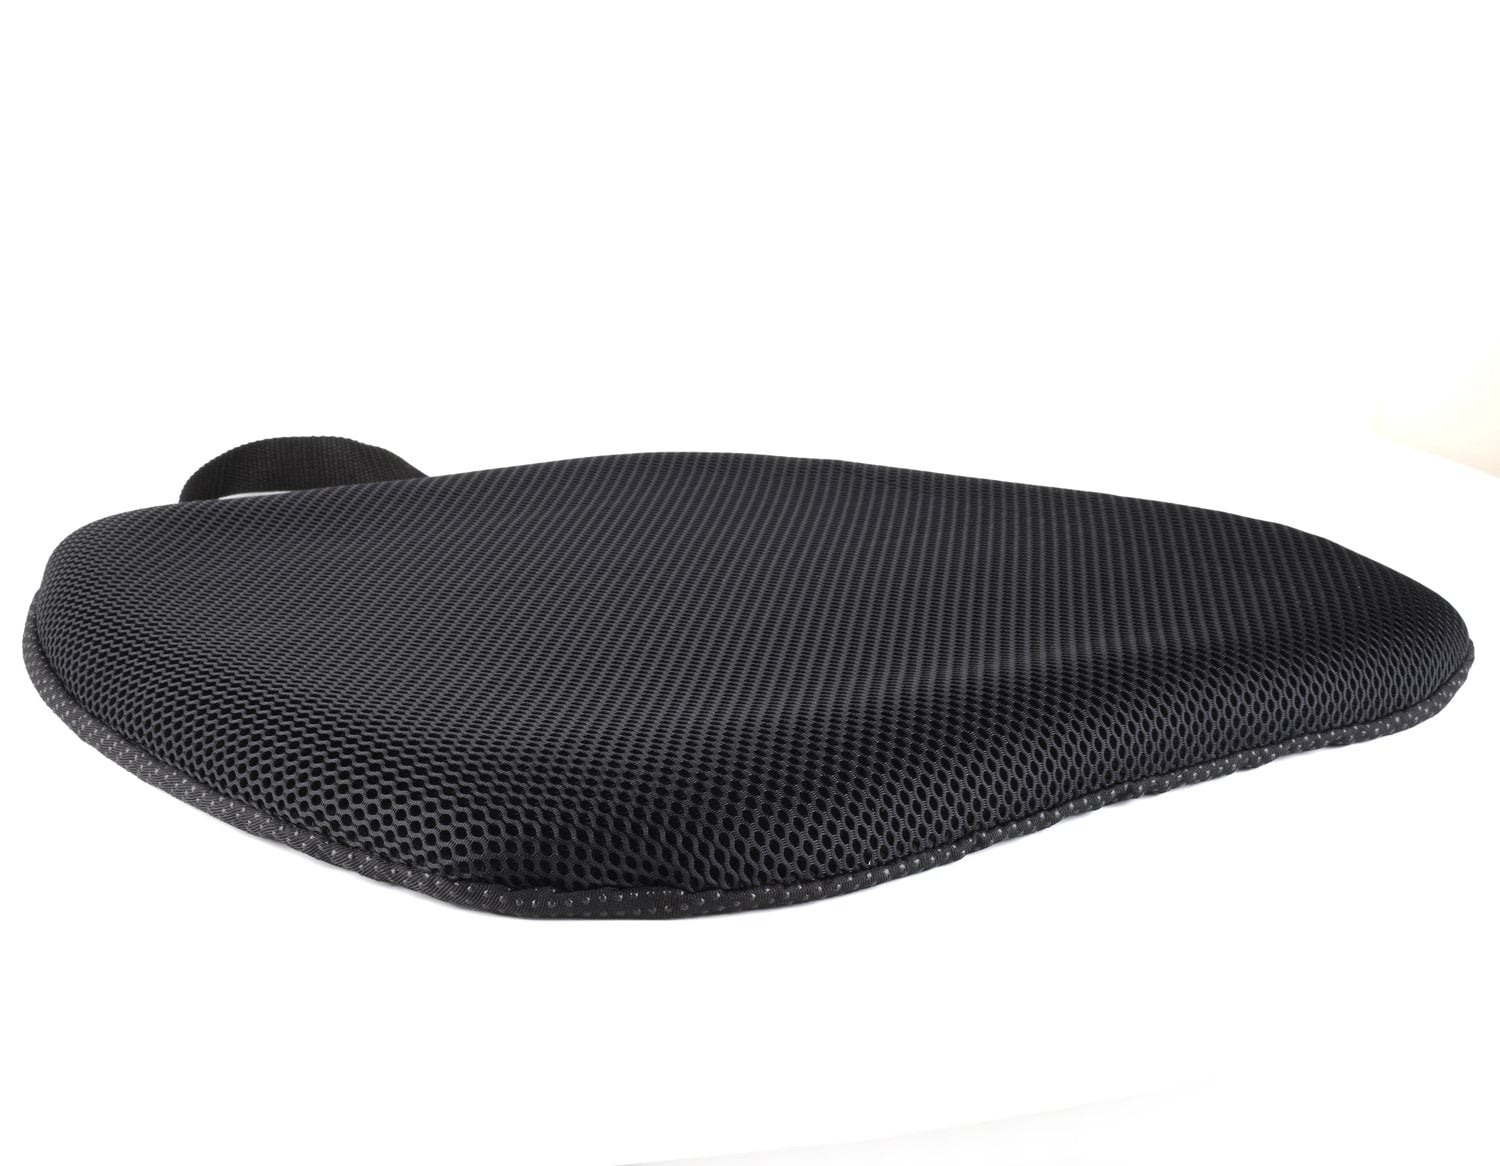 JAY Fusion Gel Wheelchair Cushion 17.5”x 18” Foam Gel Insert Skin  Protection New